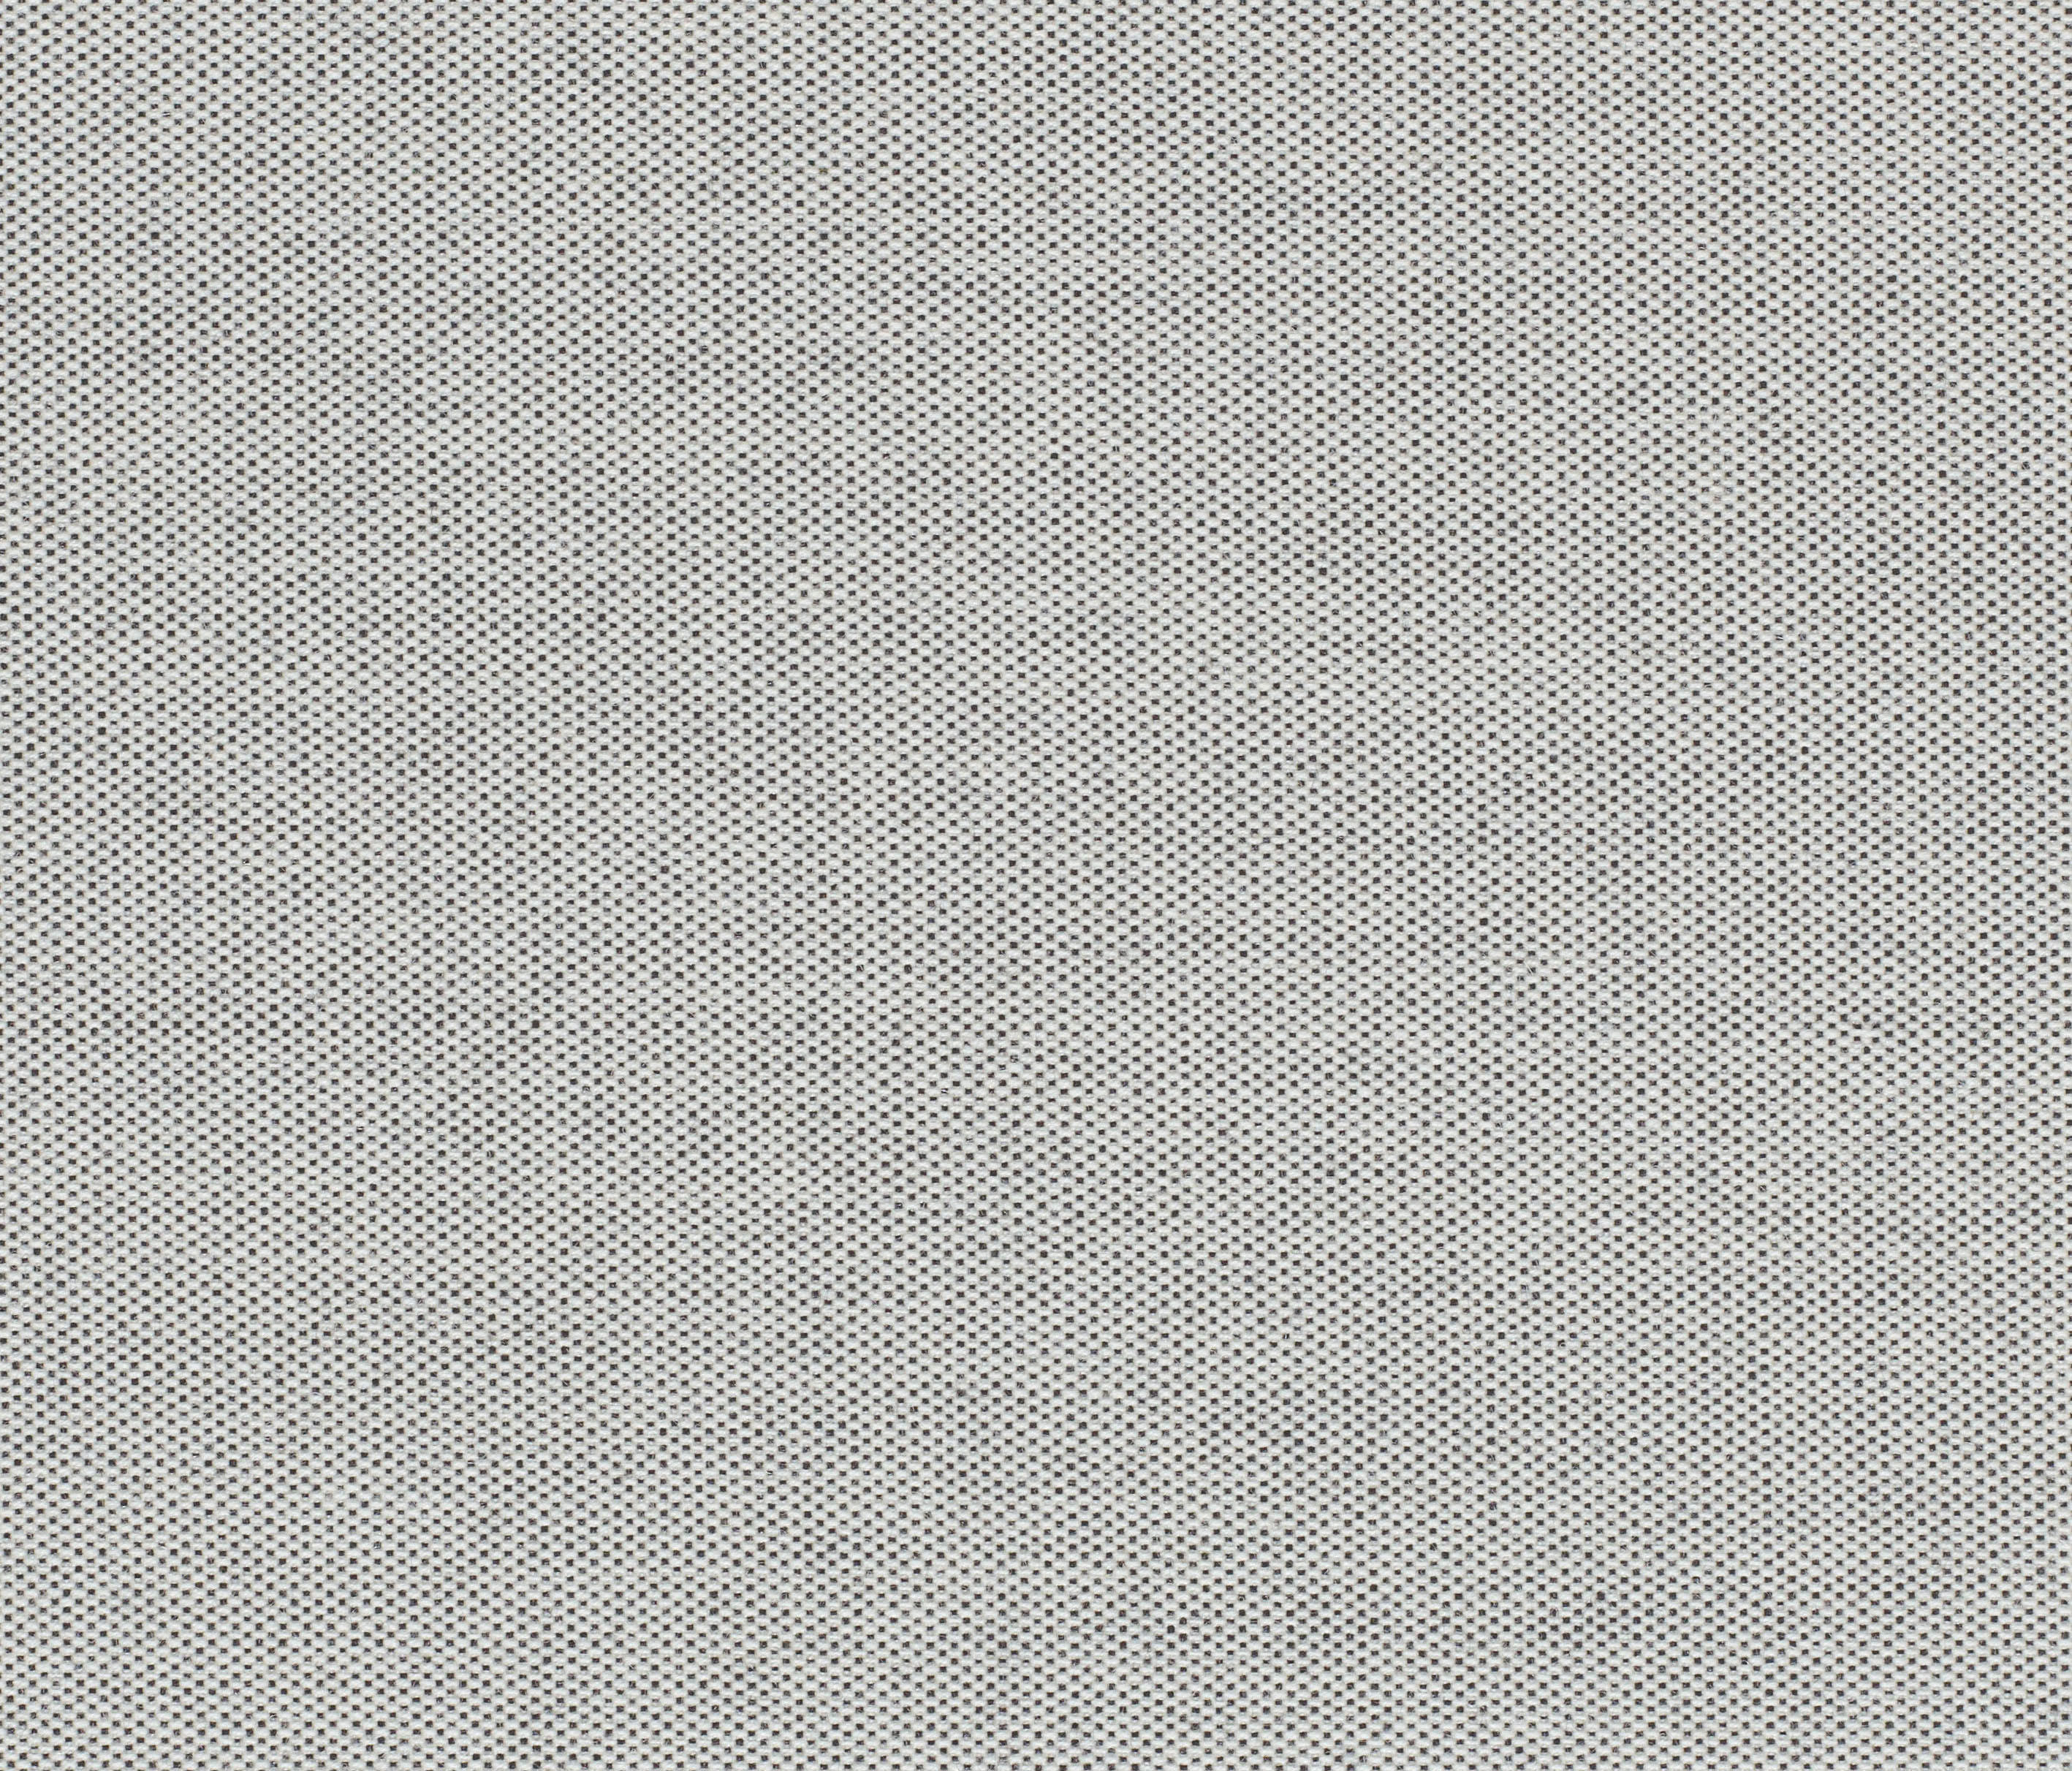 BASEL - 0121 - Upholstery fabrics from Kvadrat | Architonic